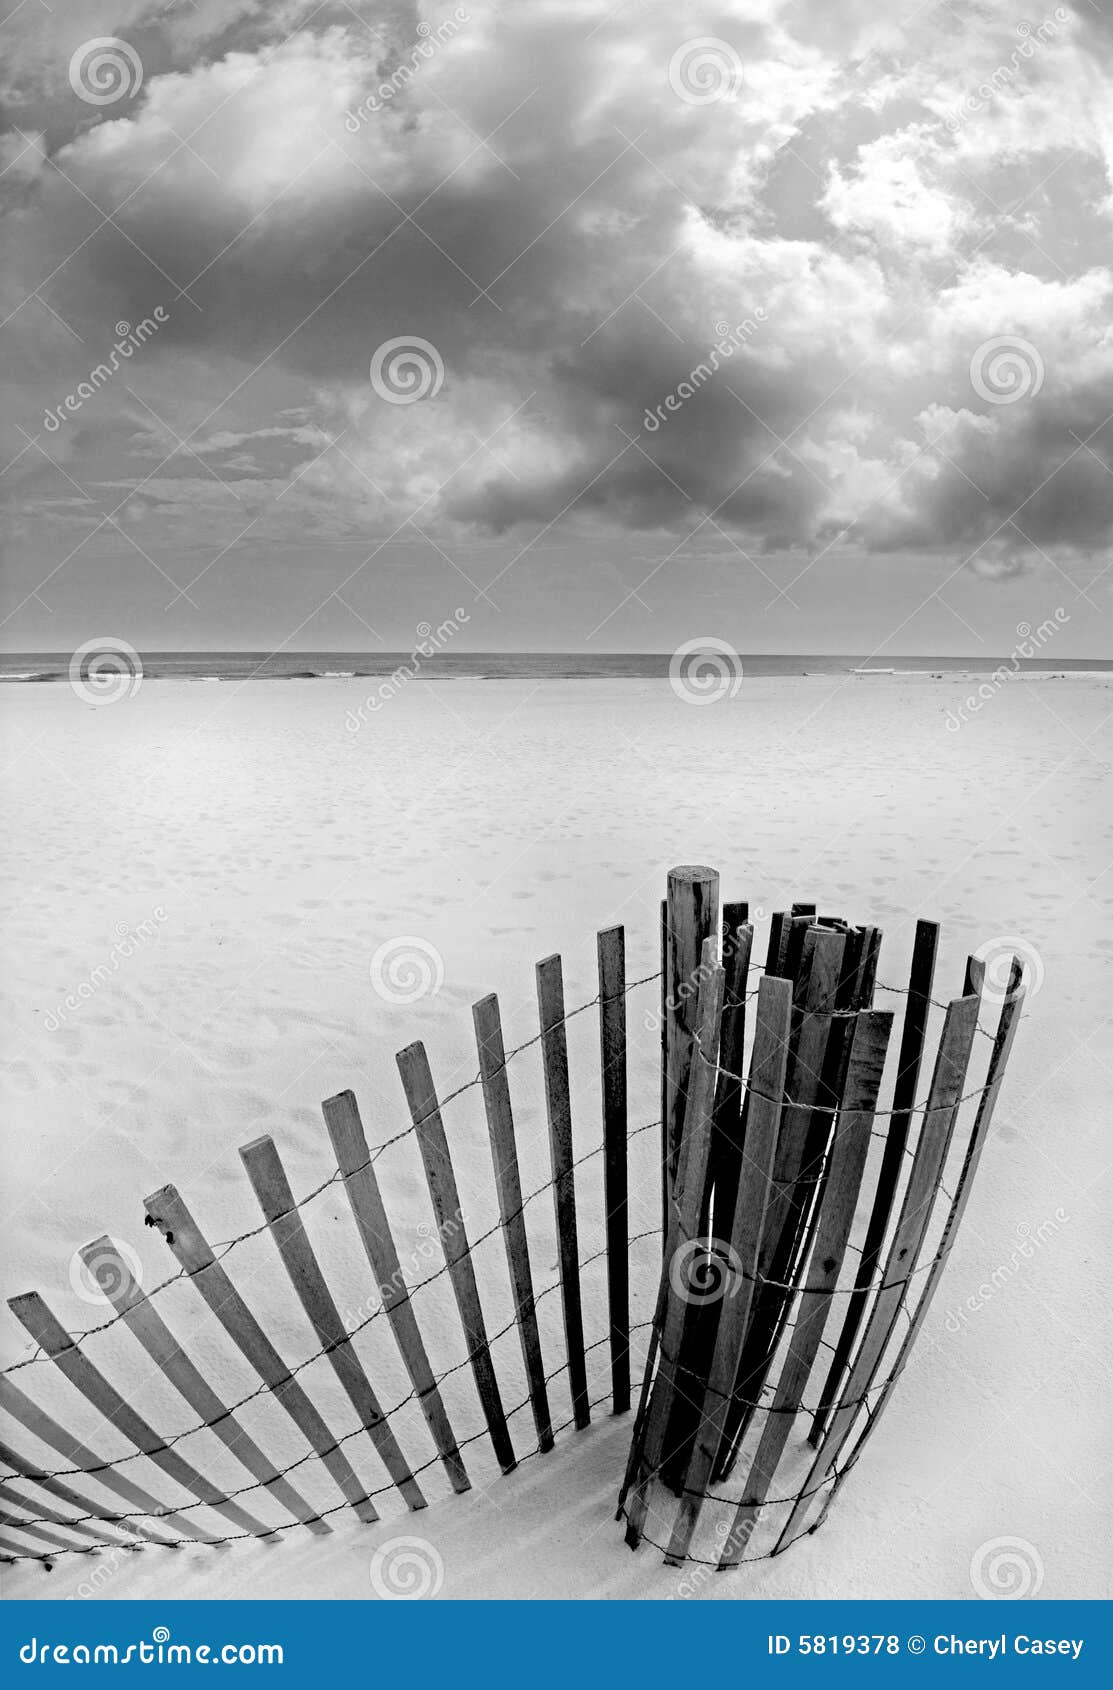 sand dune fence on beach